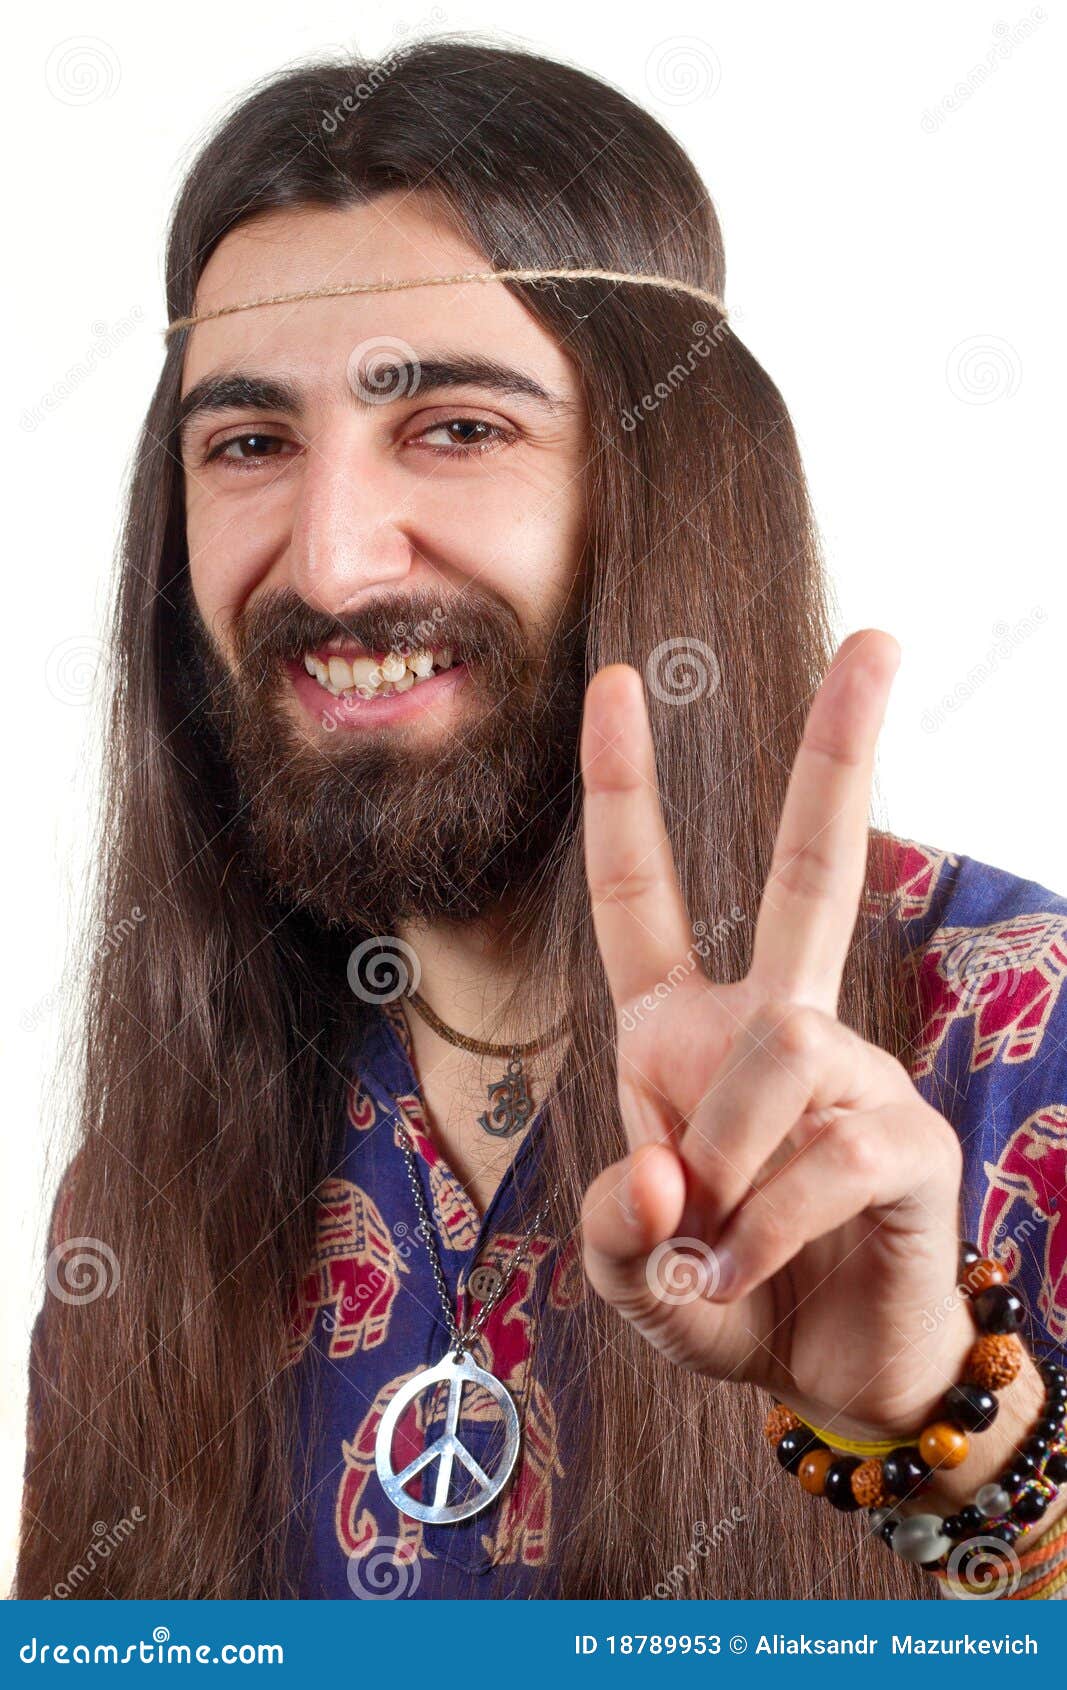 short hippie hairstyles male｜TikTok Search